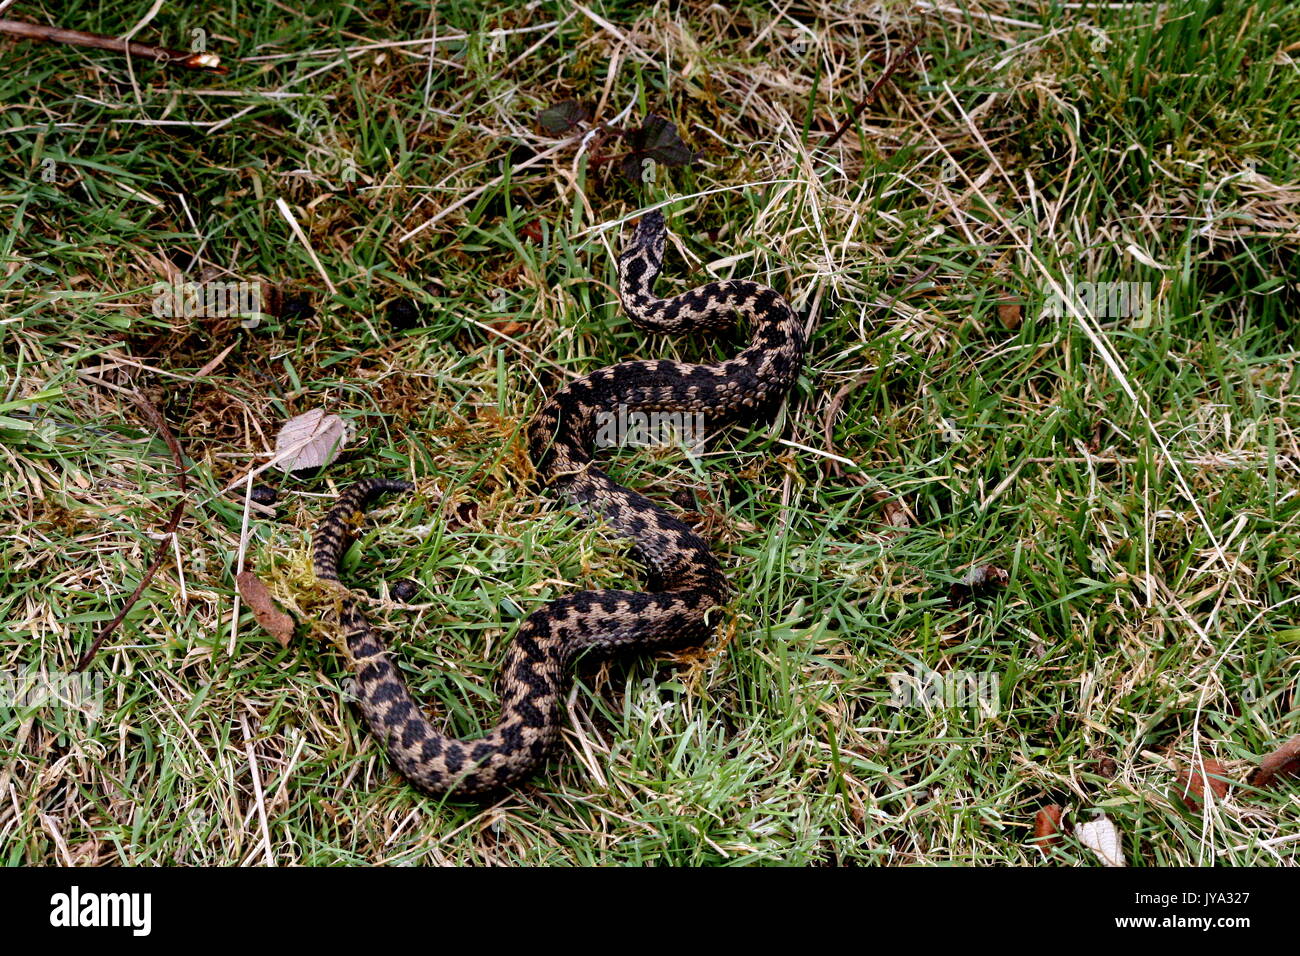 Adder montrant peur d'oiseaux prédateurs, Politique Européenne, vipère Vipera berus, sur les collines de Malvern, Worcestershire. Femelle adulte serpent venimeux UK Banque D'Images